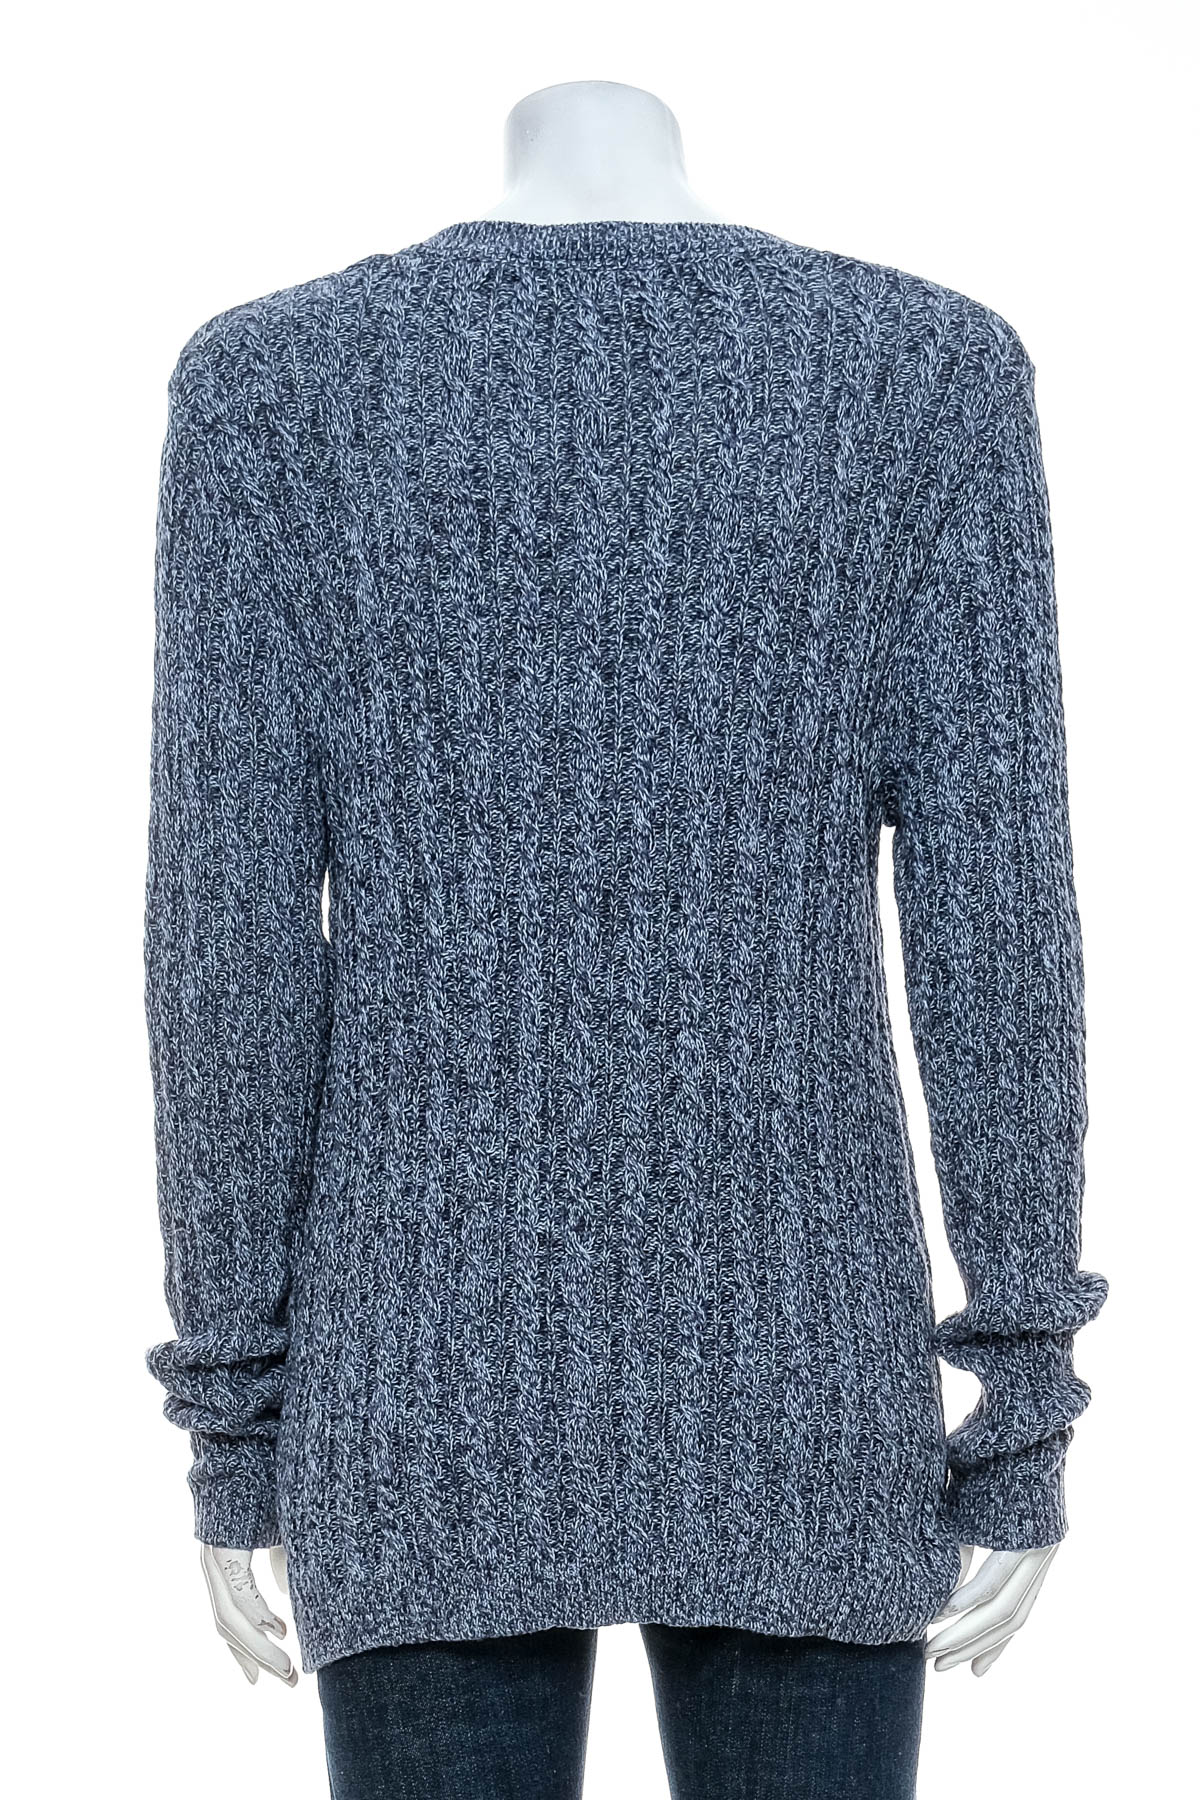 Women's sweater - Croft & Barrow - 1